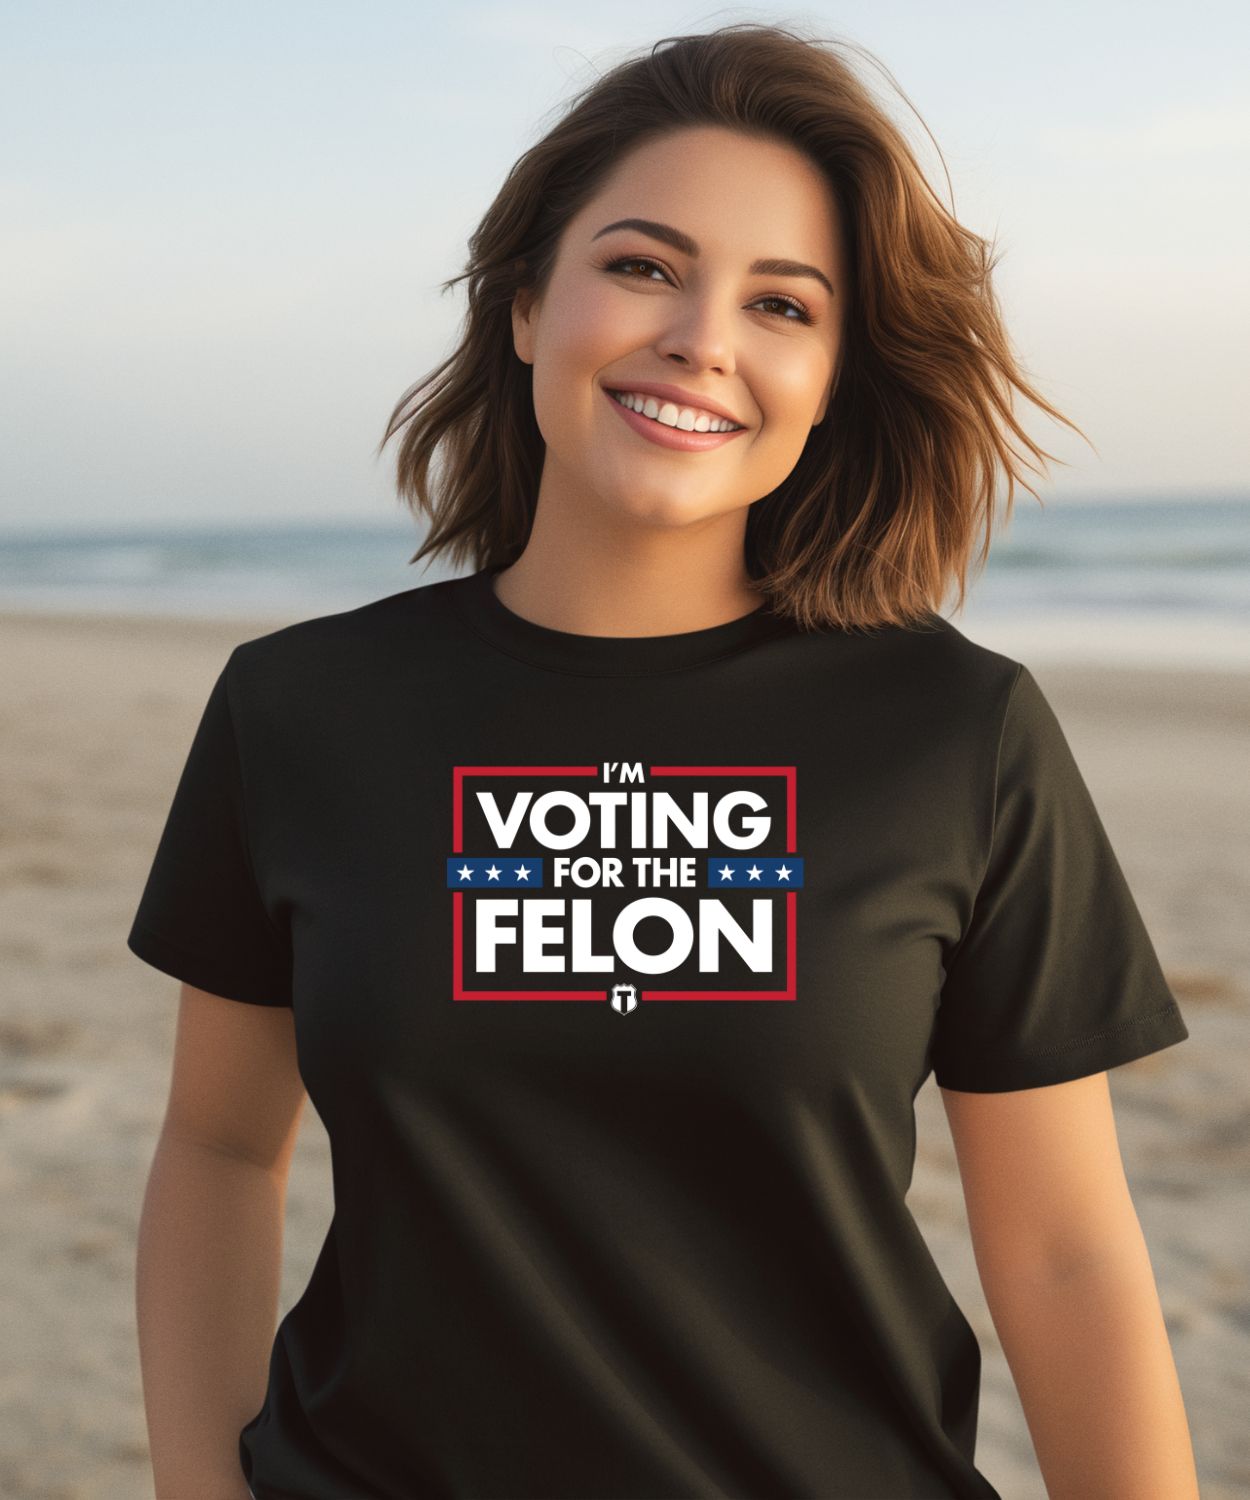 The Officer Tatum Store Voting For The Felon Shirt